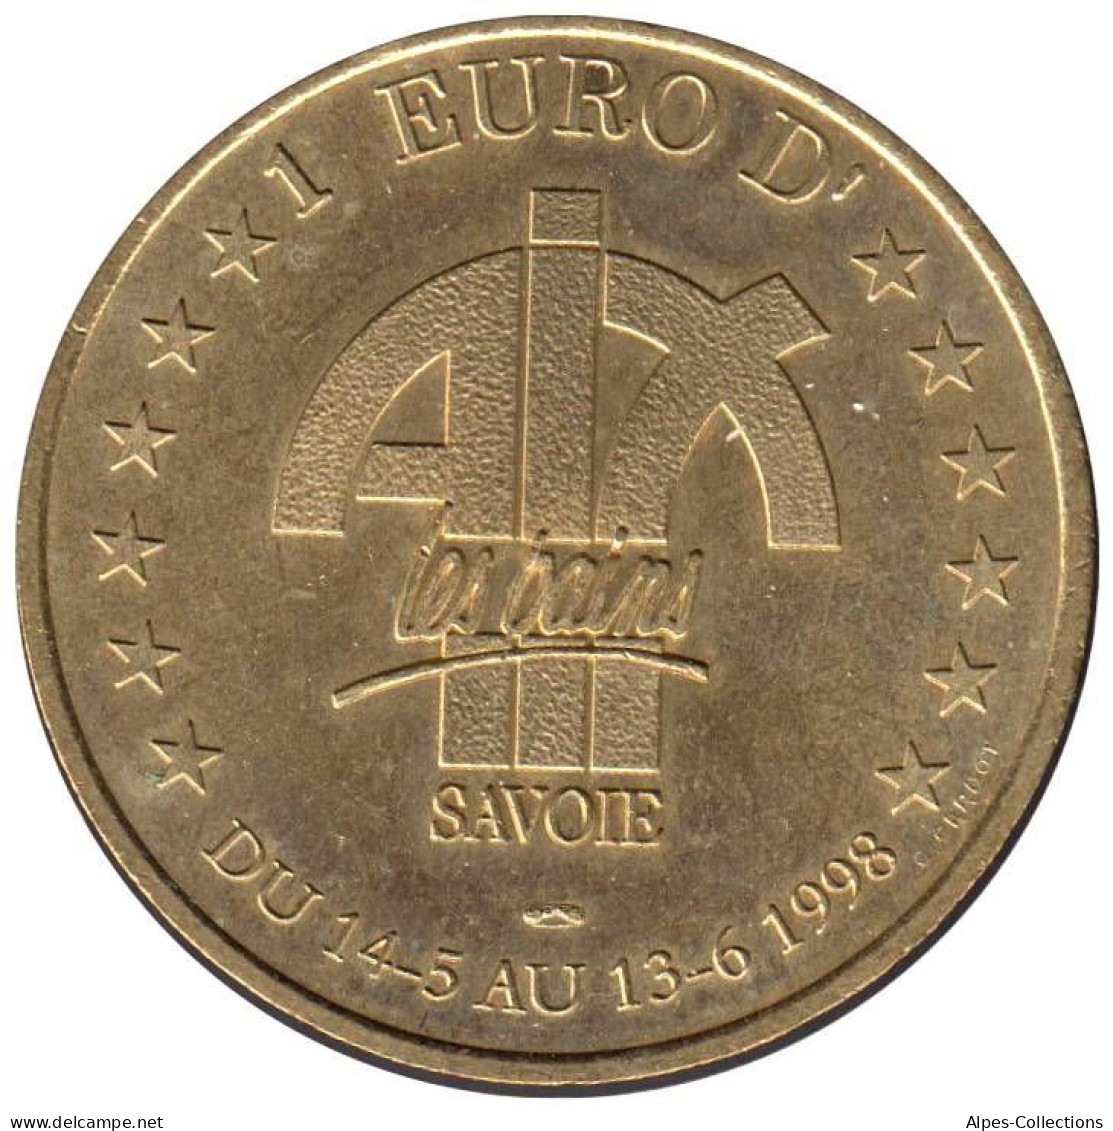 AIX LES BAINS - EU0010.3 - 1 EURO DES VILLES - Réf: T418 - 1998 - Euro Delle Città